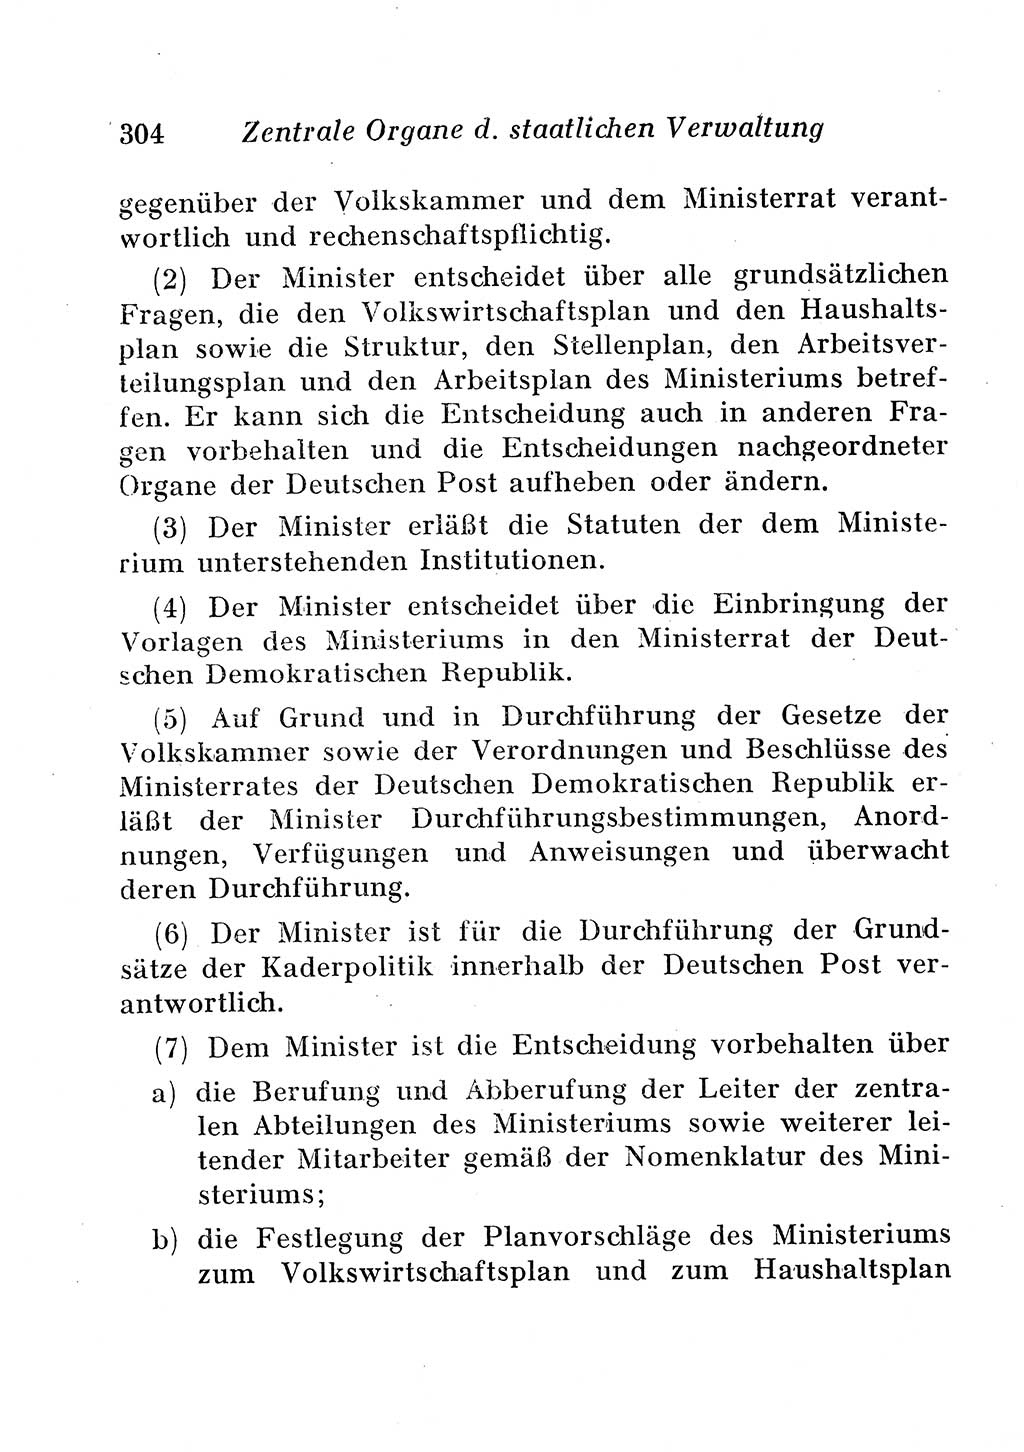 Staats- und verwaltungsrechtliche Gesetze der Deutschen Demokratischen Republik (DDR) 1958, Seite 304 (StVerwR Ges. DDR 1958, S. 304)